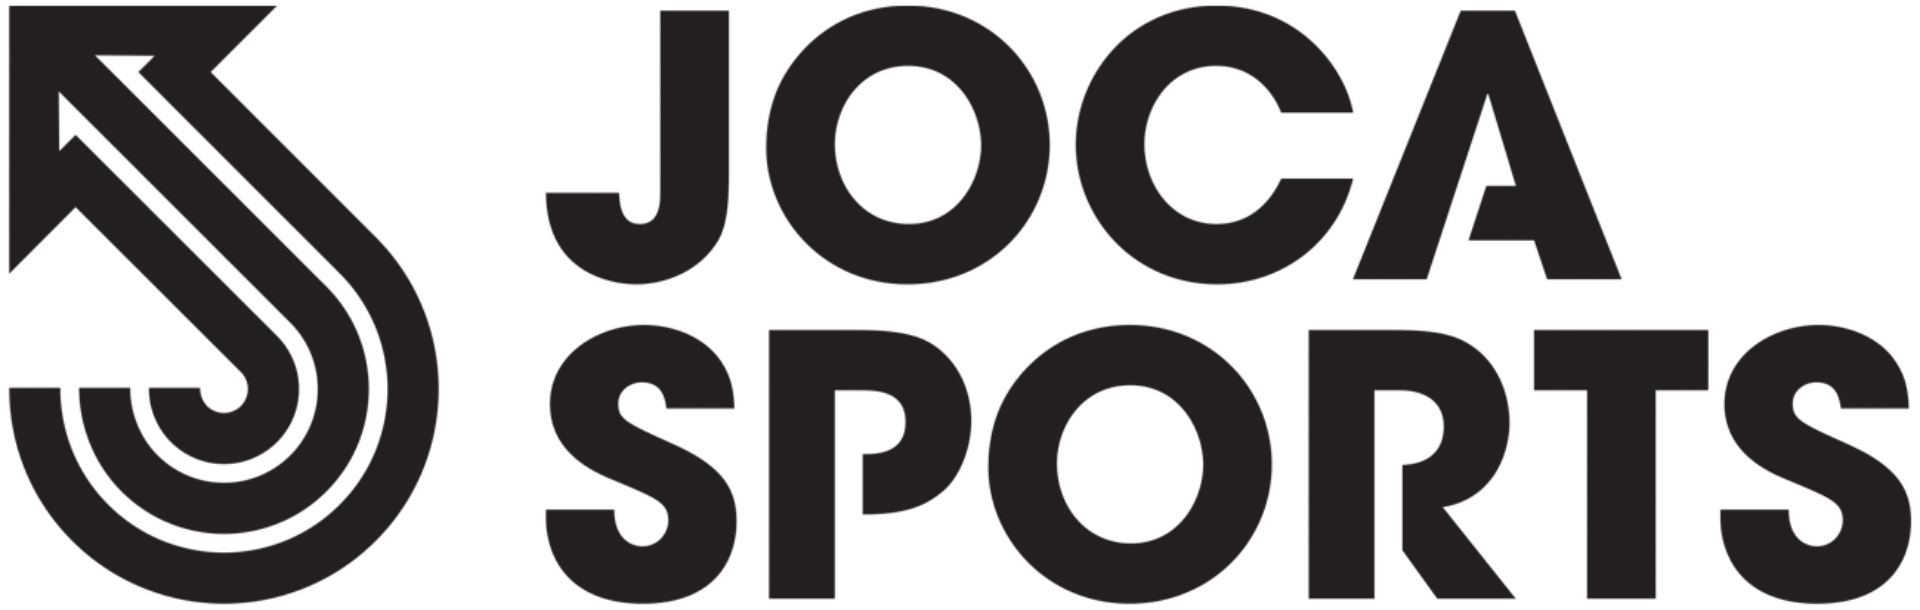 www.jocasports.com